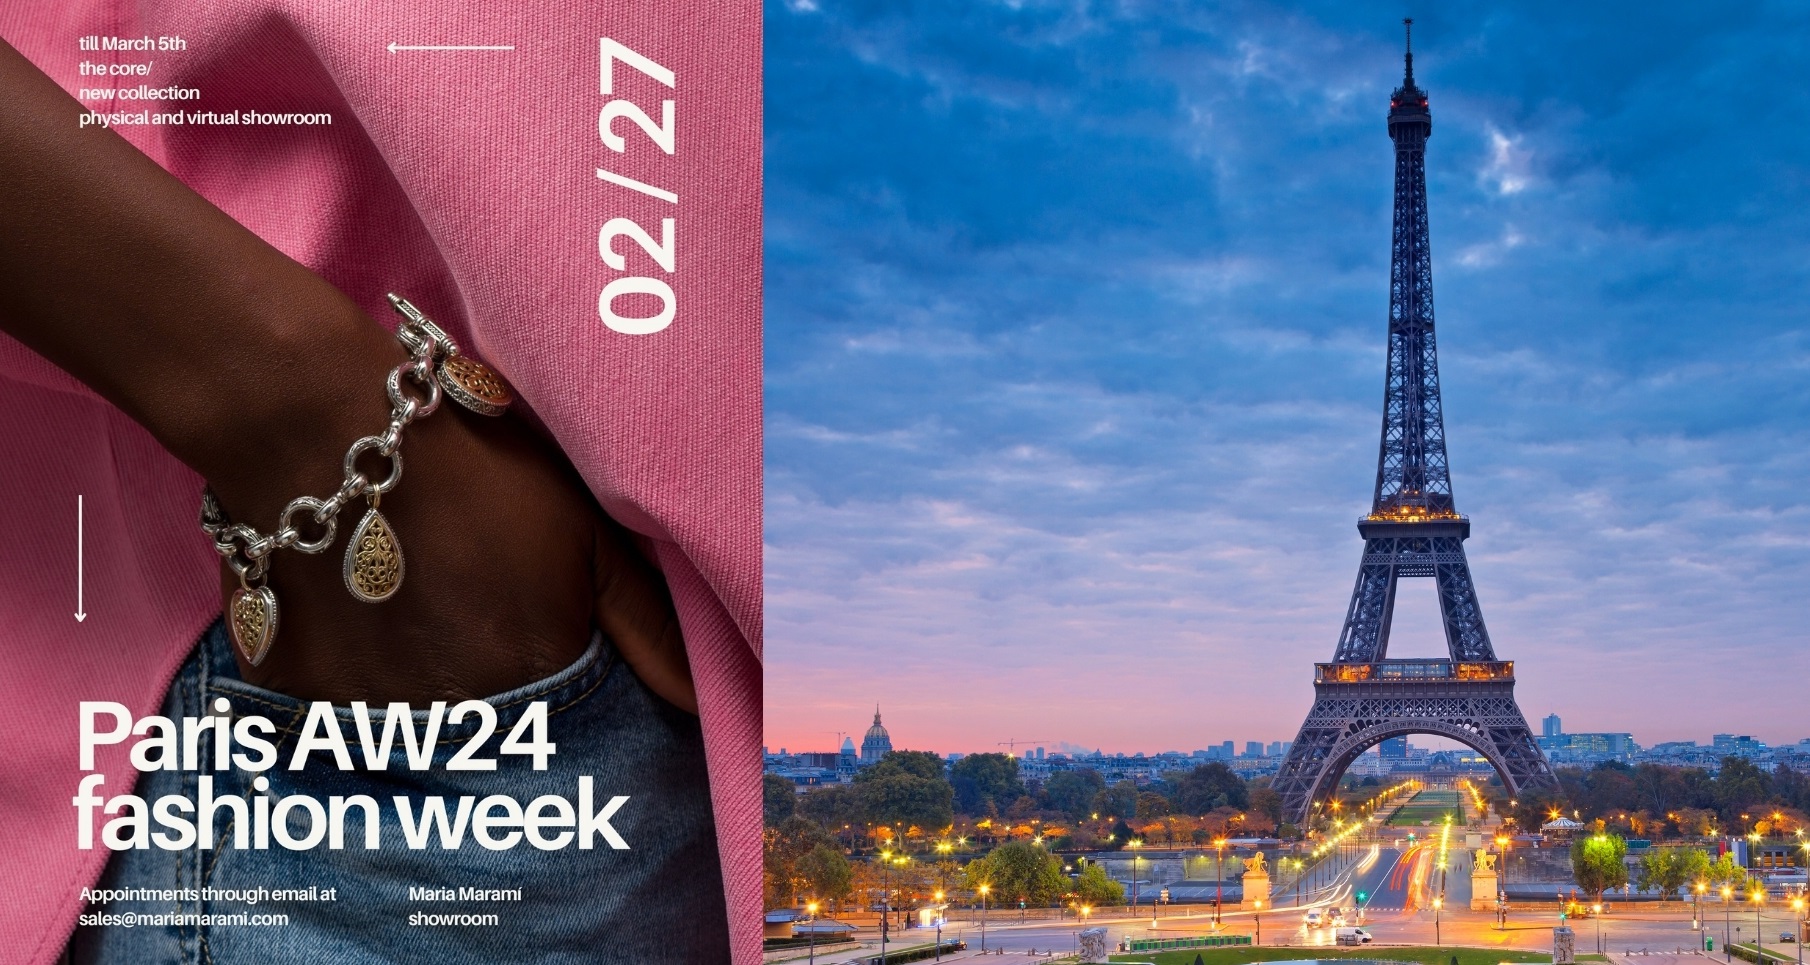 Next Stop: Paris Fashion Week AW24